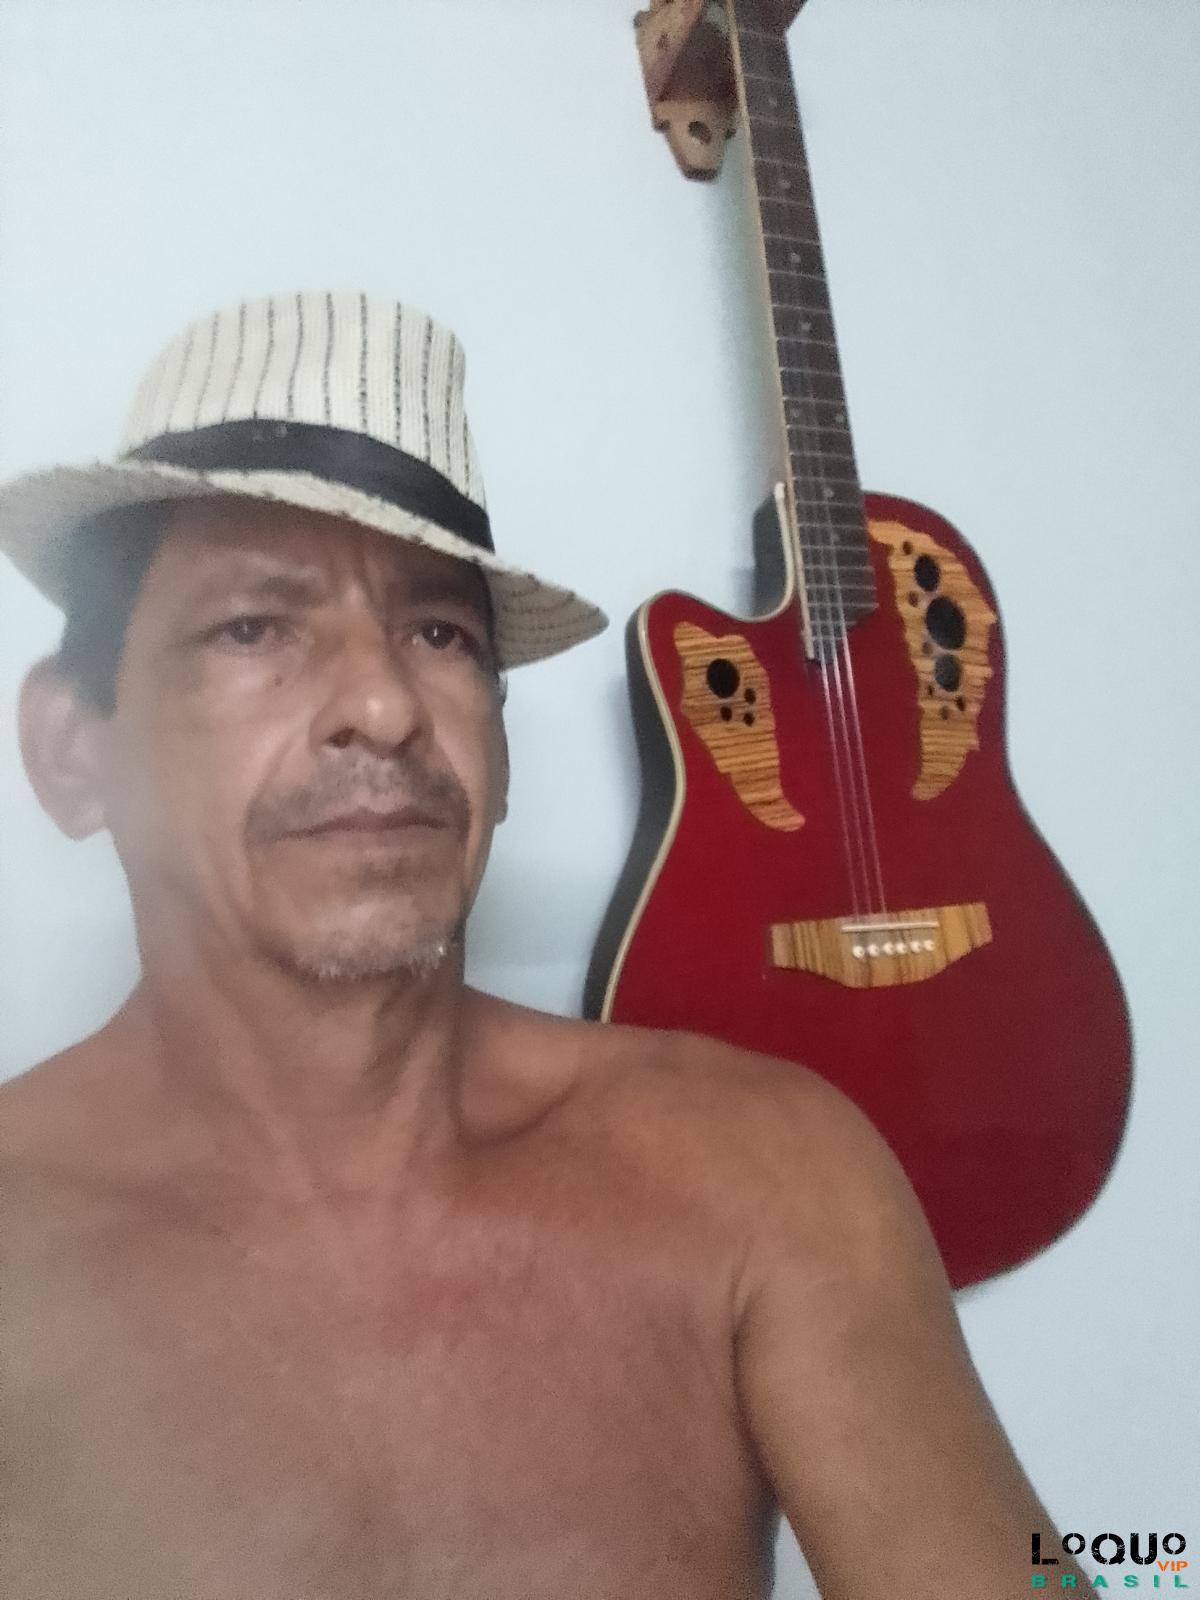 Encontros Casuais Pará: Moreno alto